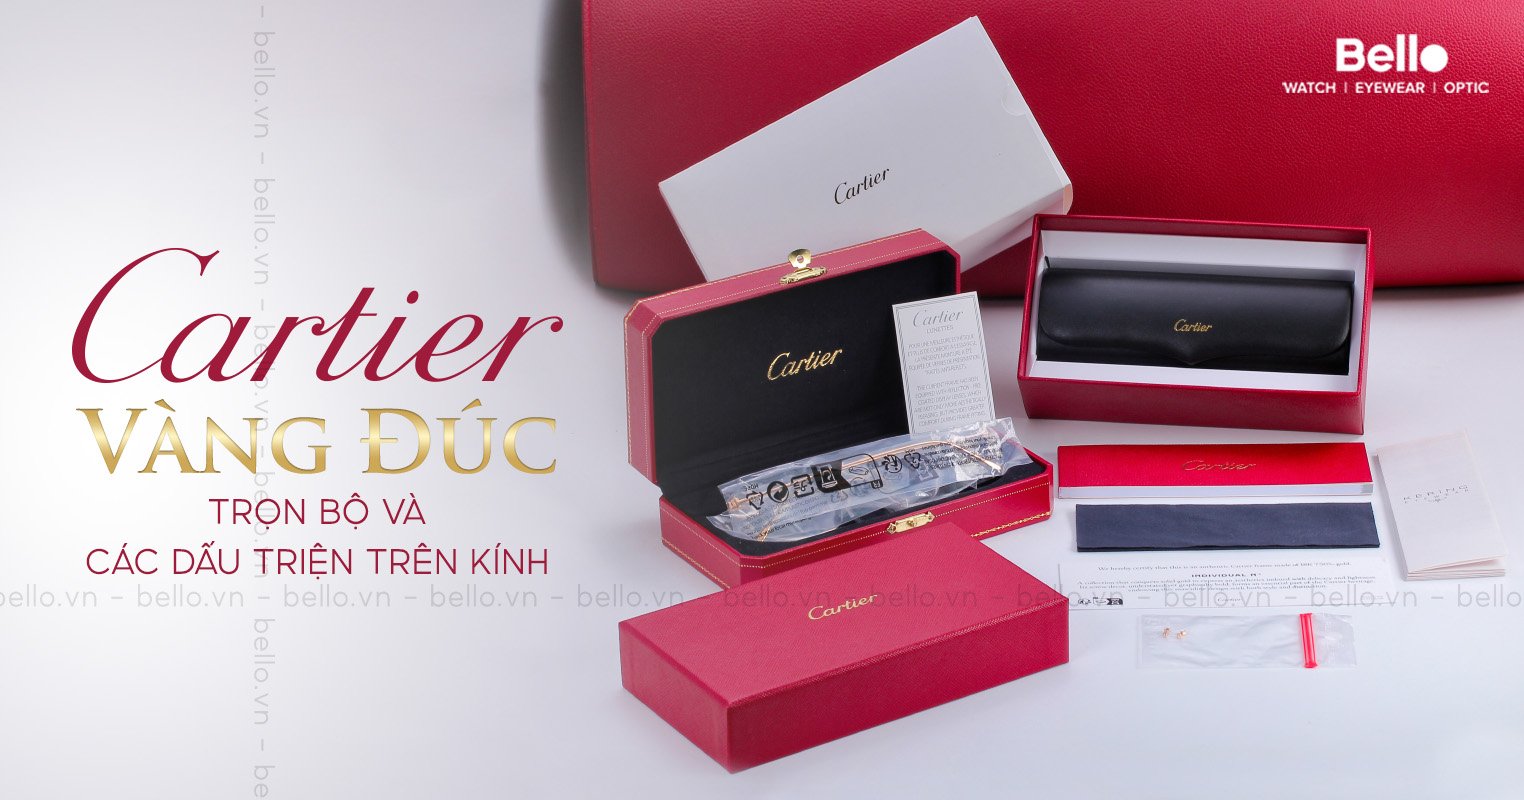 Trọn bộ và các dấu TRIỆN trên kính Cartier vàng đúc 18K tại Bello Eyewear